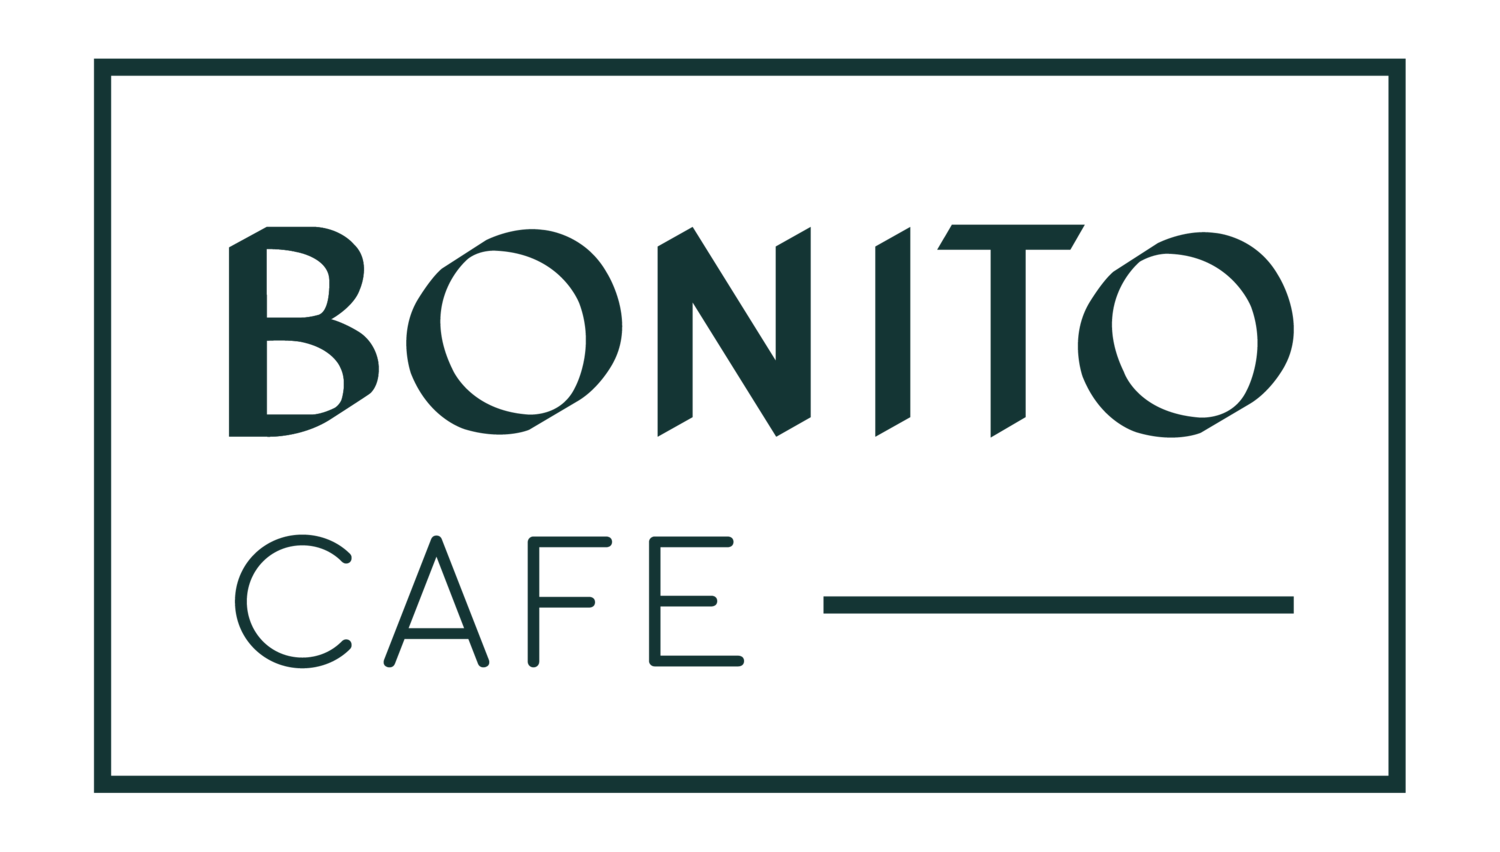 DON BONITO CAFÉ